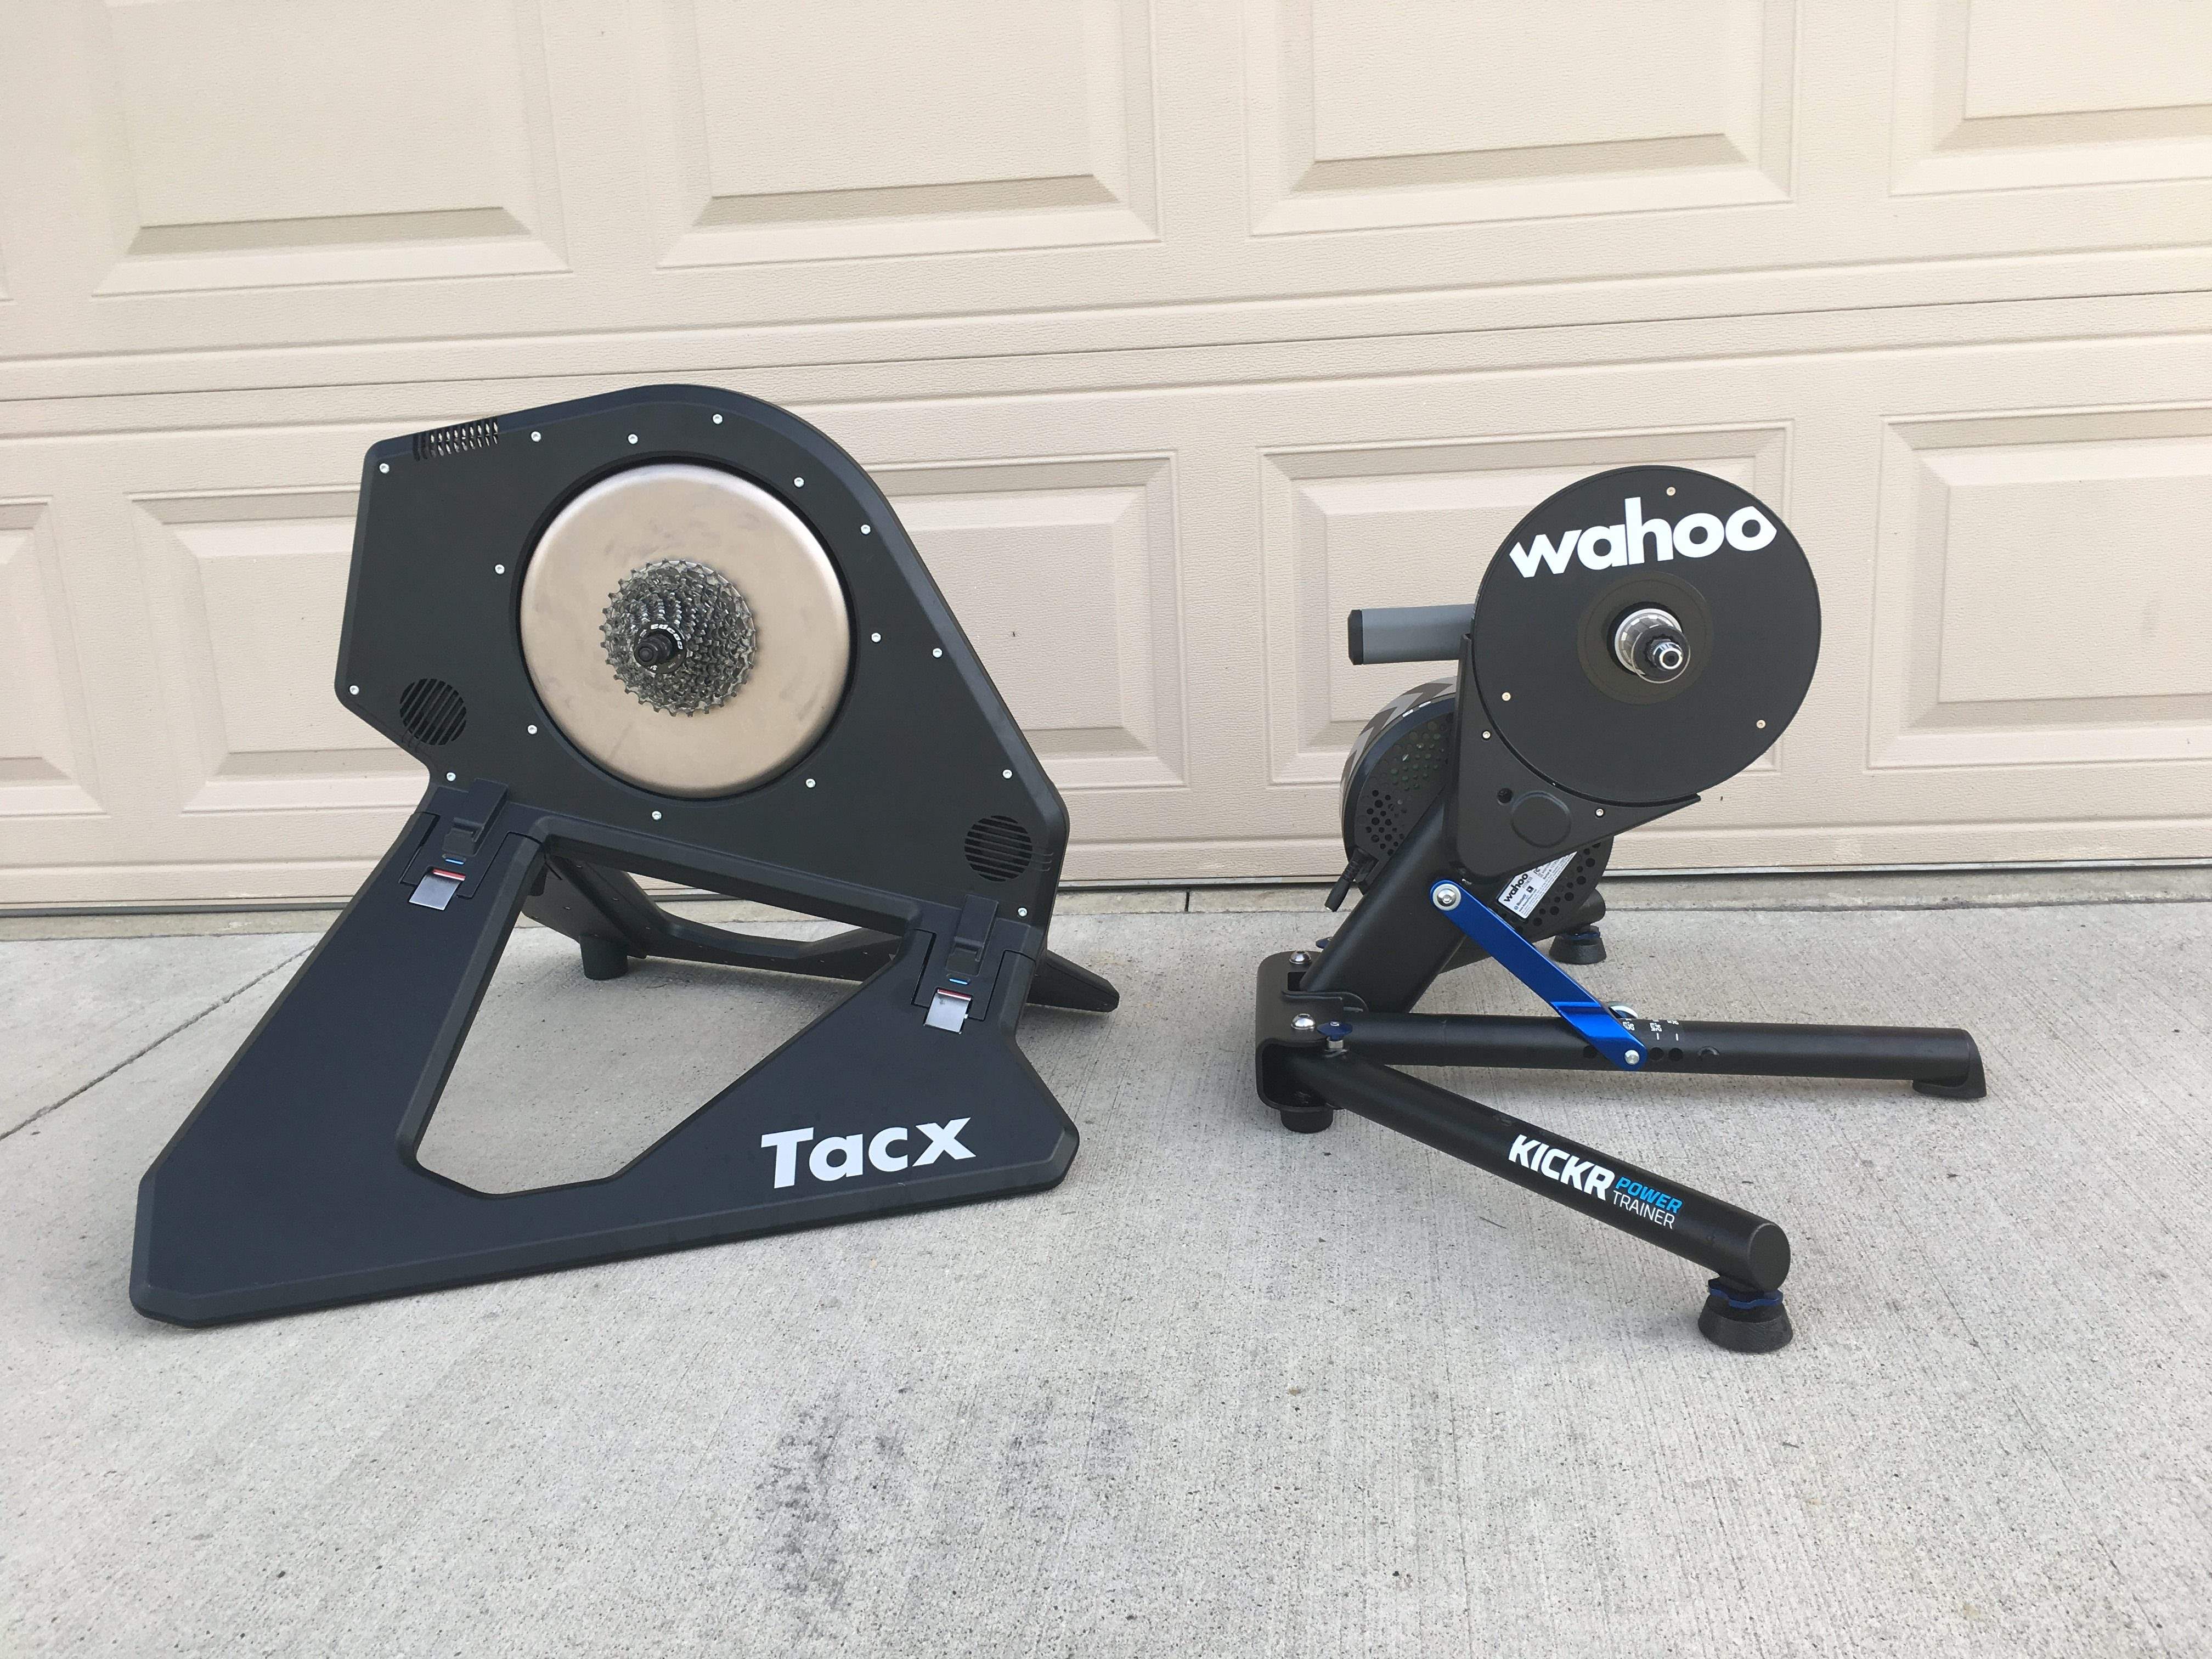 tacx of wahoo